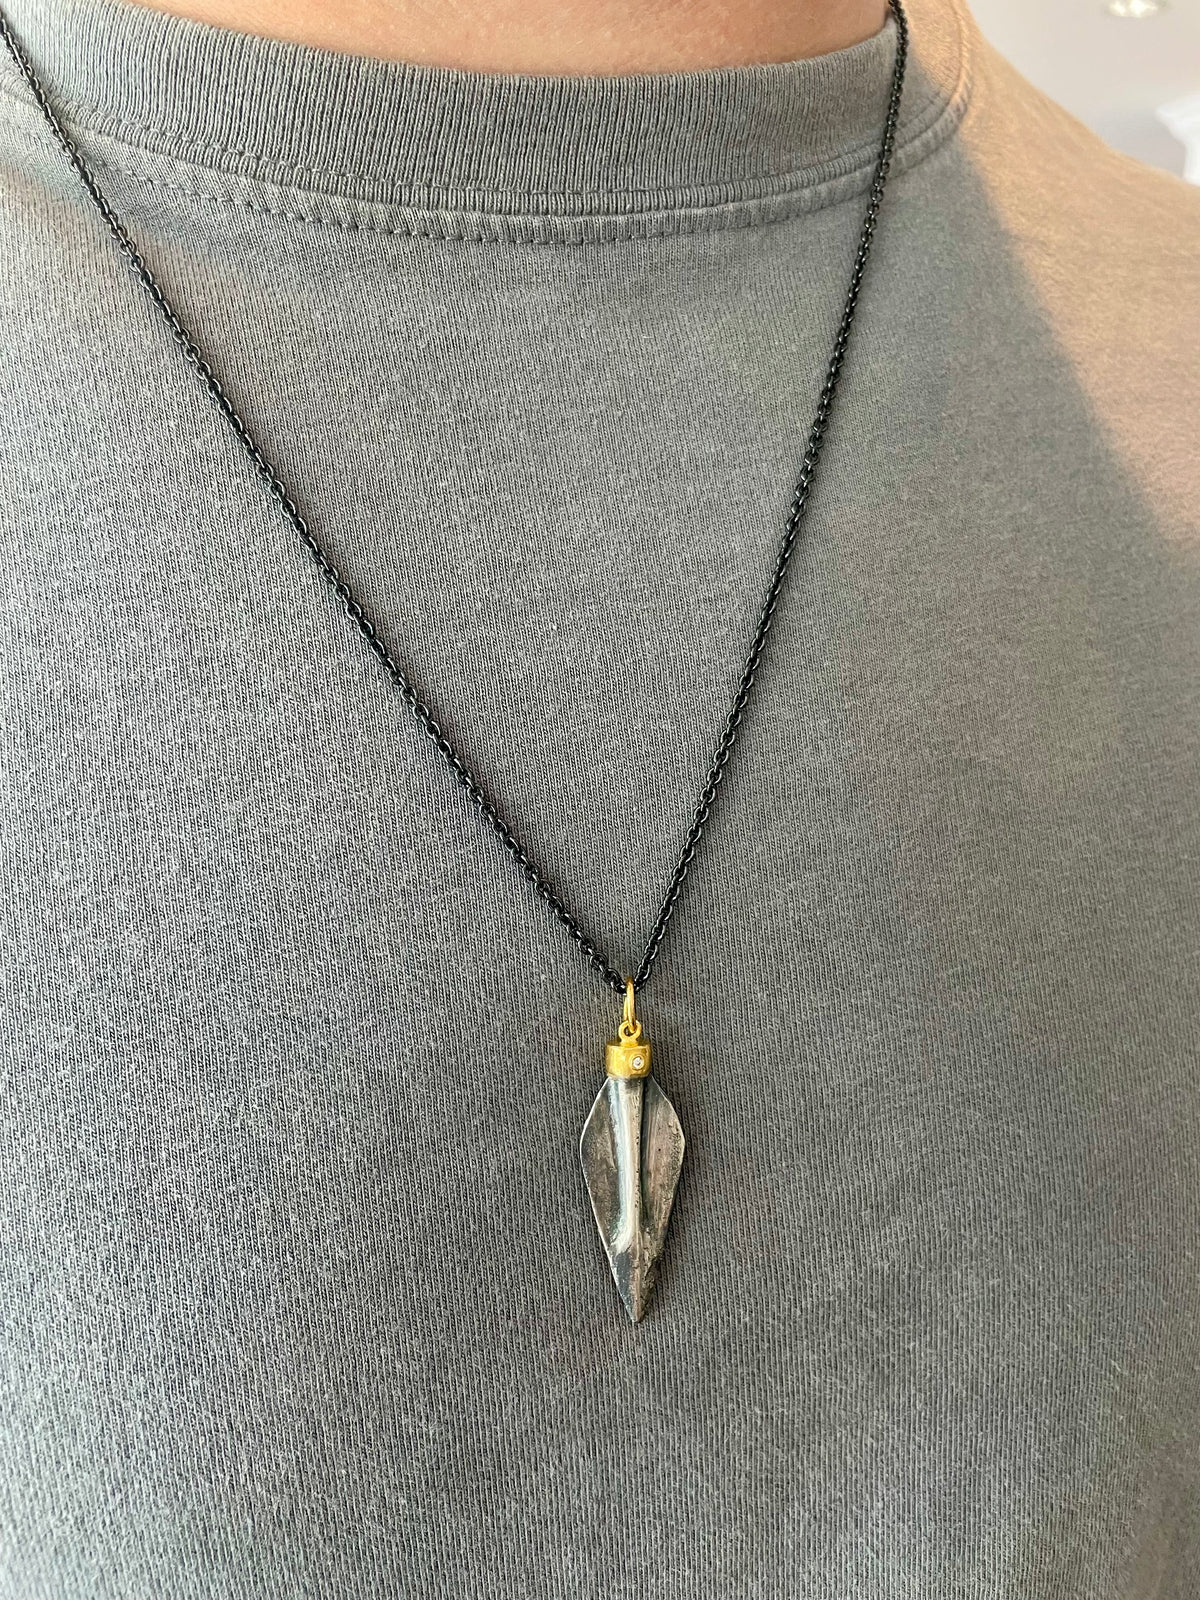 Wholesale Medieval Bodkin Arrowhead Necklace for your shop – Faire UK